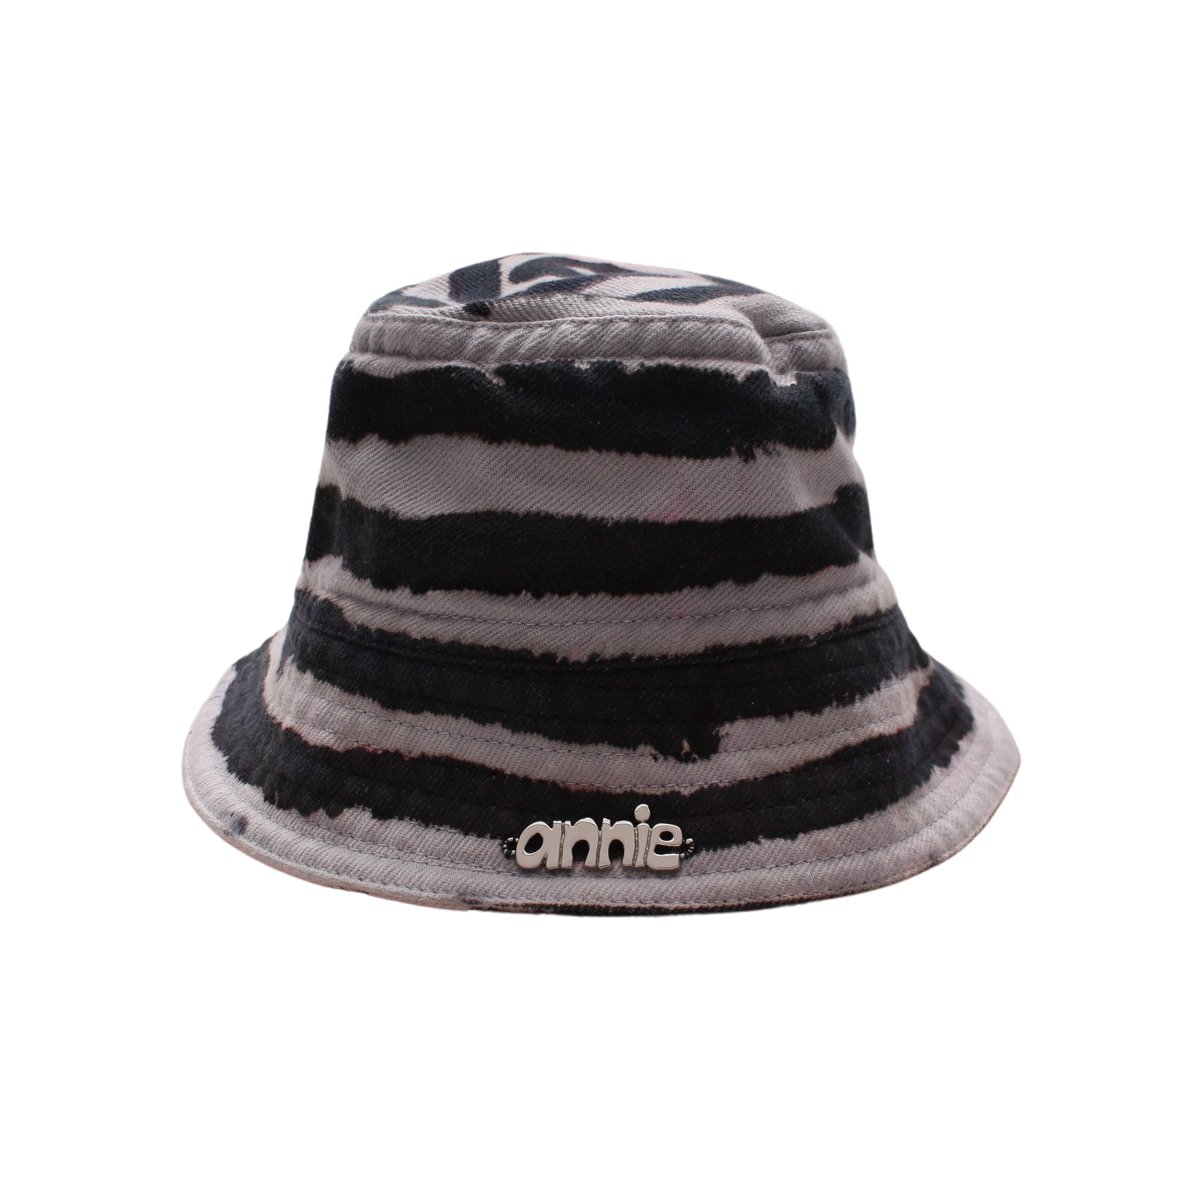 BUCKET HAT Painted 100% Cotton【Black Spiral】